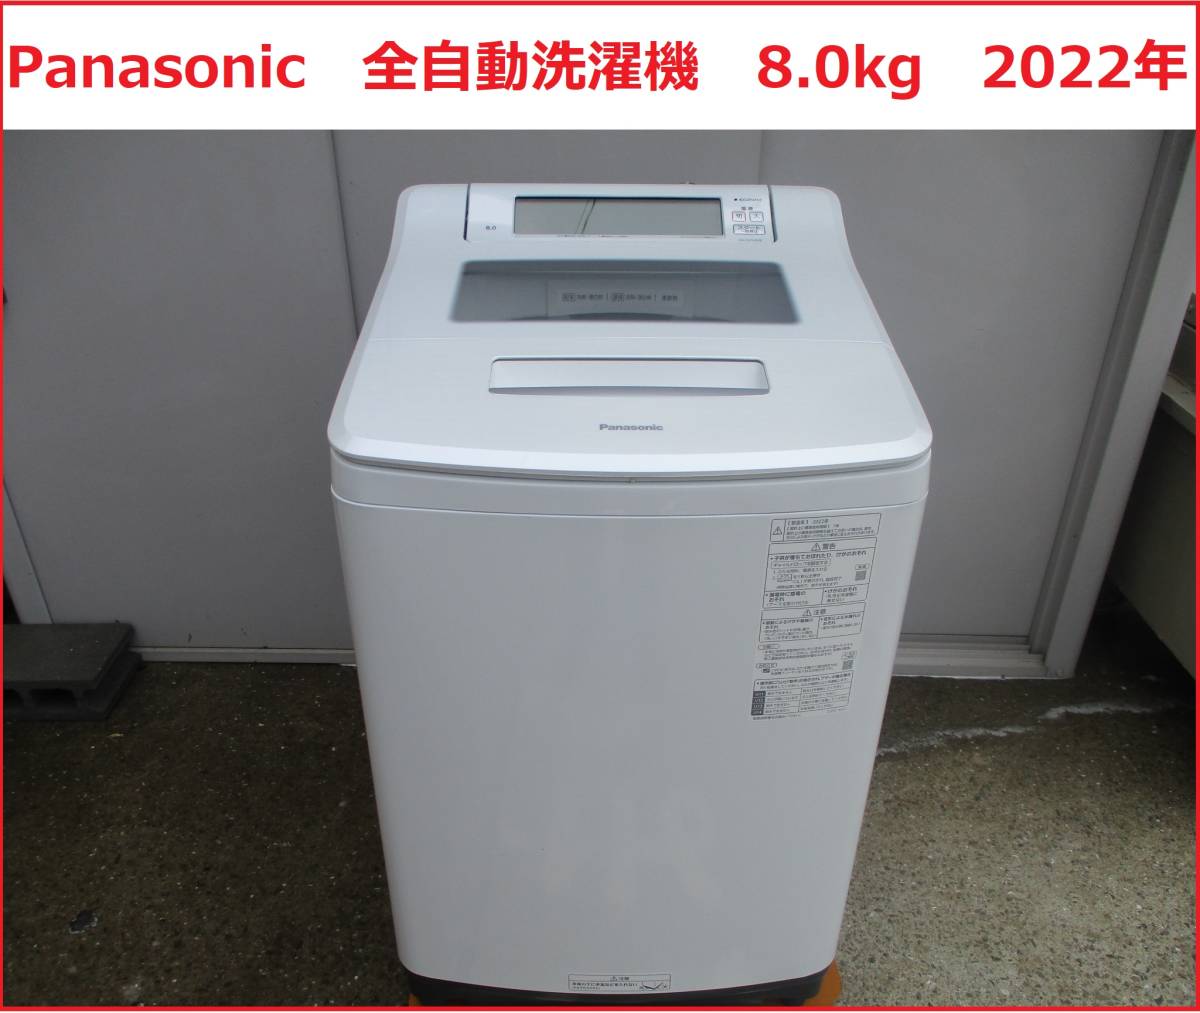 都内で 【中古】M△ハイセンス 洗濯機 (26909) HW-G75A ホワイト